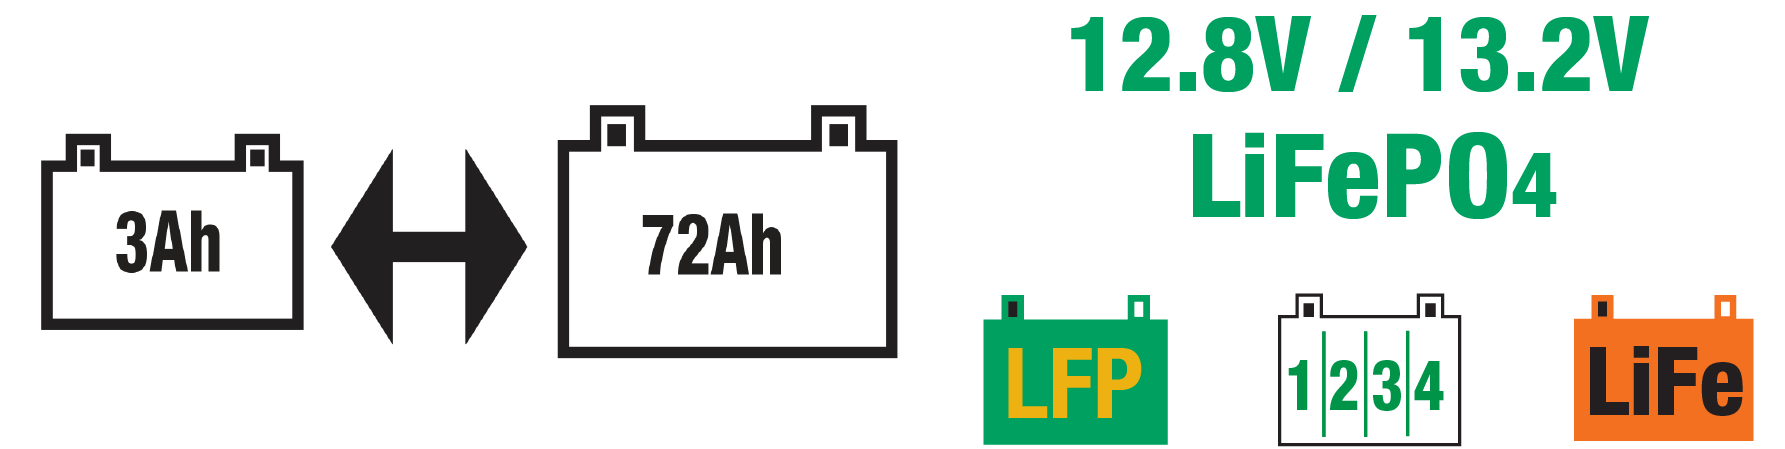 el optimate litio 4s 6a es Ideal para baterías LiFeP04 / LFP de 12.8V/13.2V